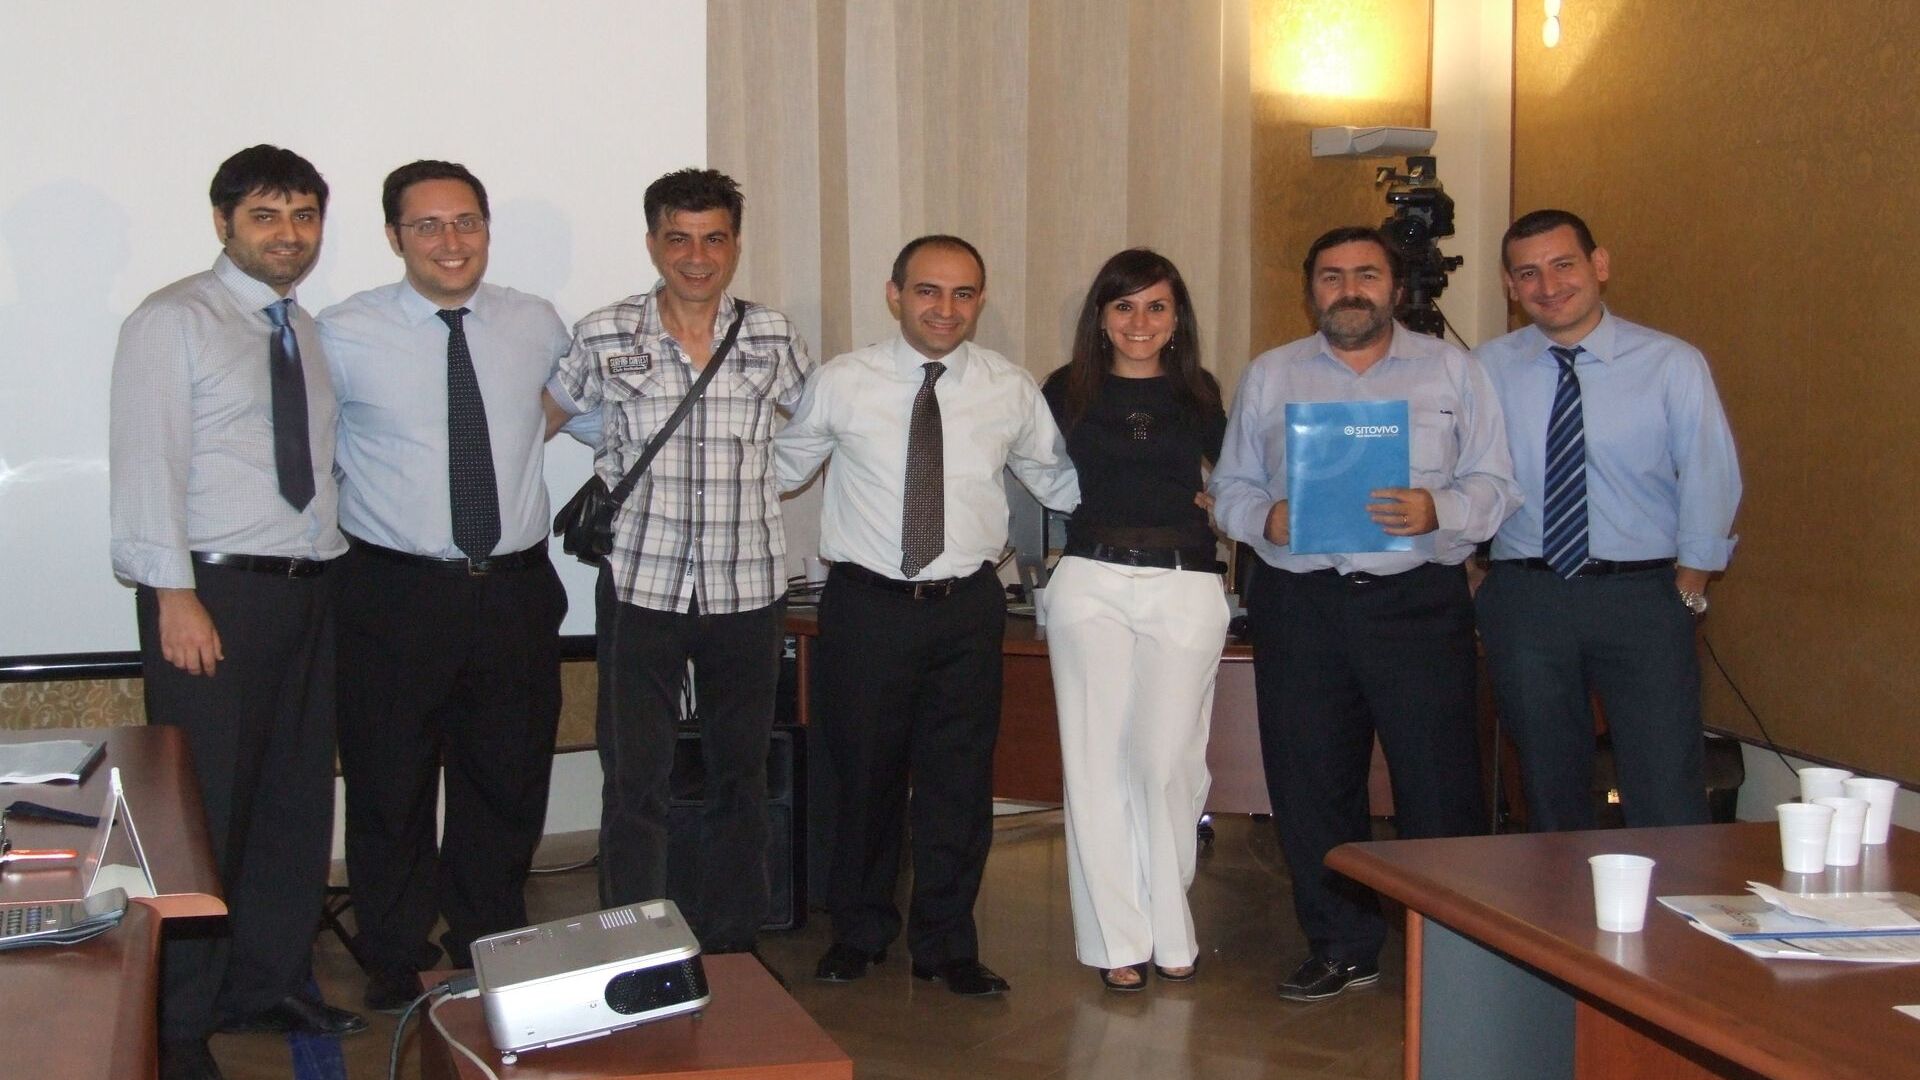 Het seminar georganiseerd door het bedrijf SitoVivo in Giarre (Catania) in 2021